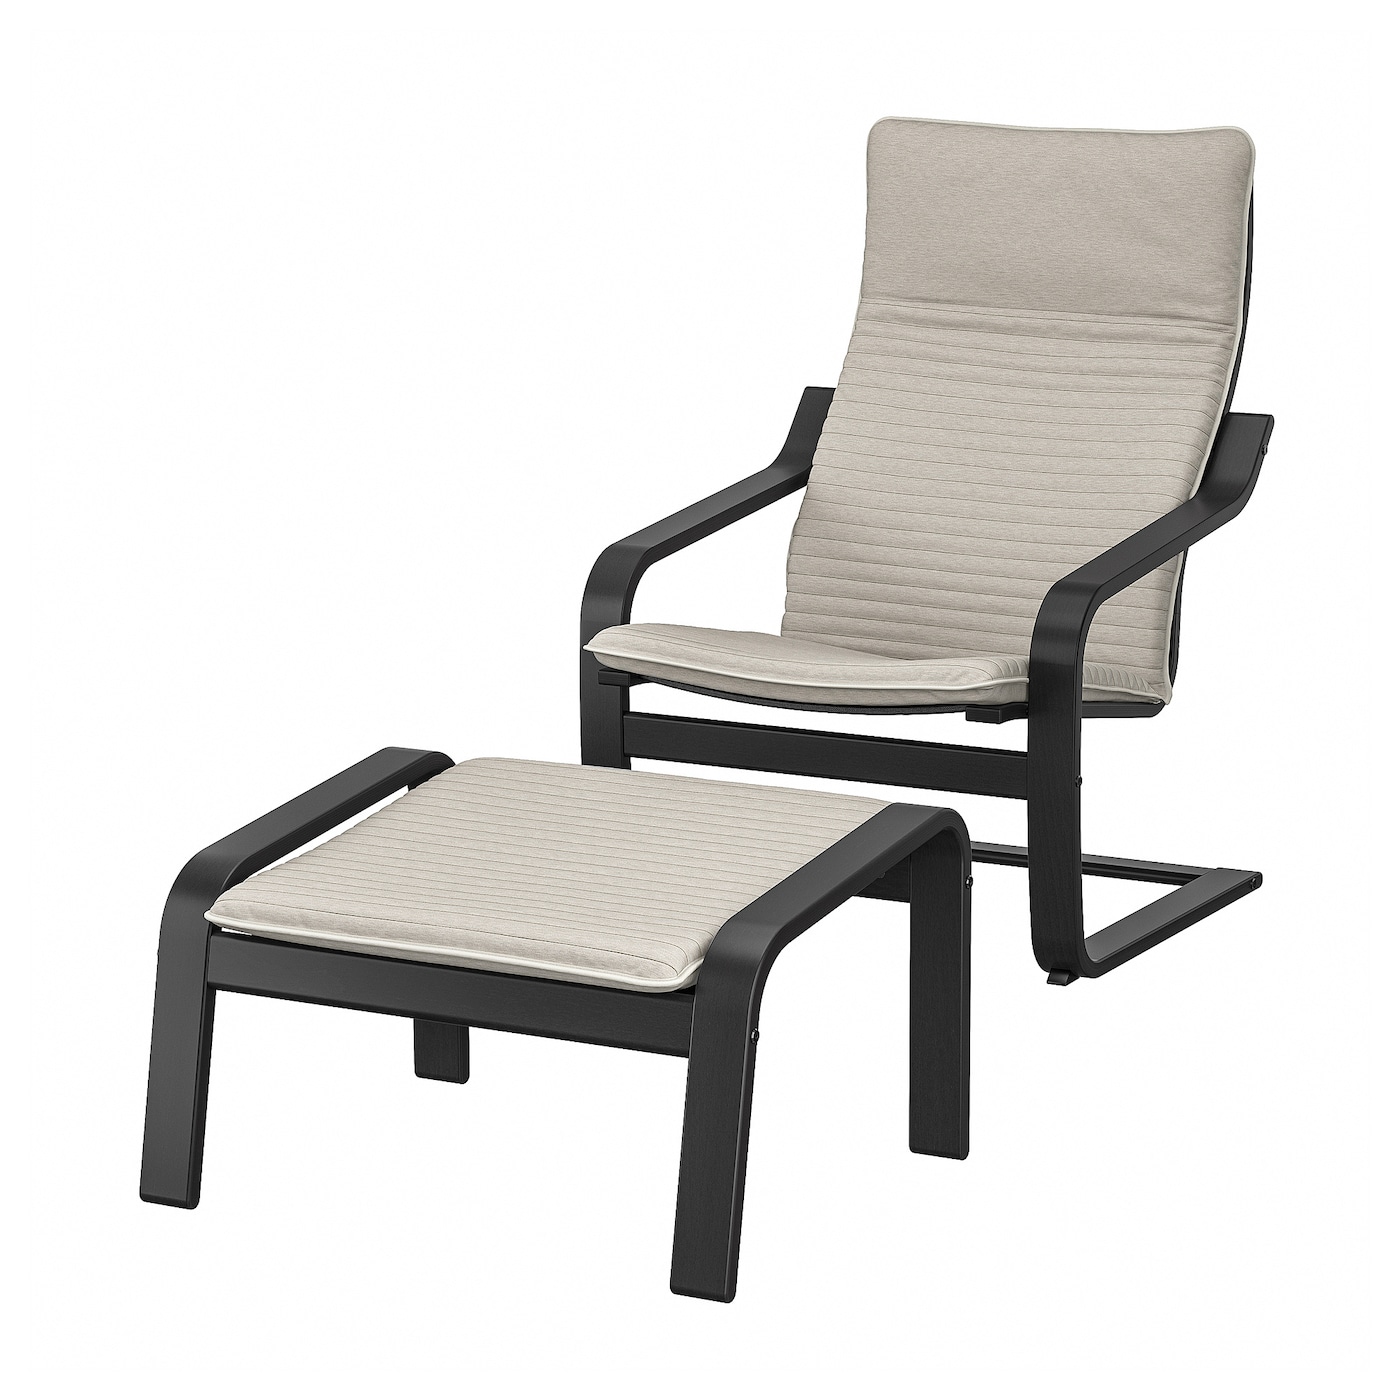 ПОЭНГ Кресло и подставка для ног, черно-коричневый/Книса светло-бежевый POÄNG IKEA кресло tetchair сн757 ткань коричневый бежевый c 26 c 13